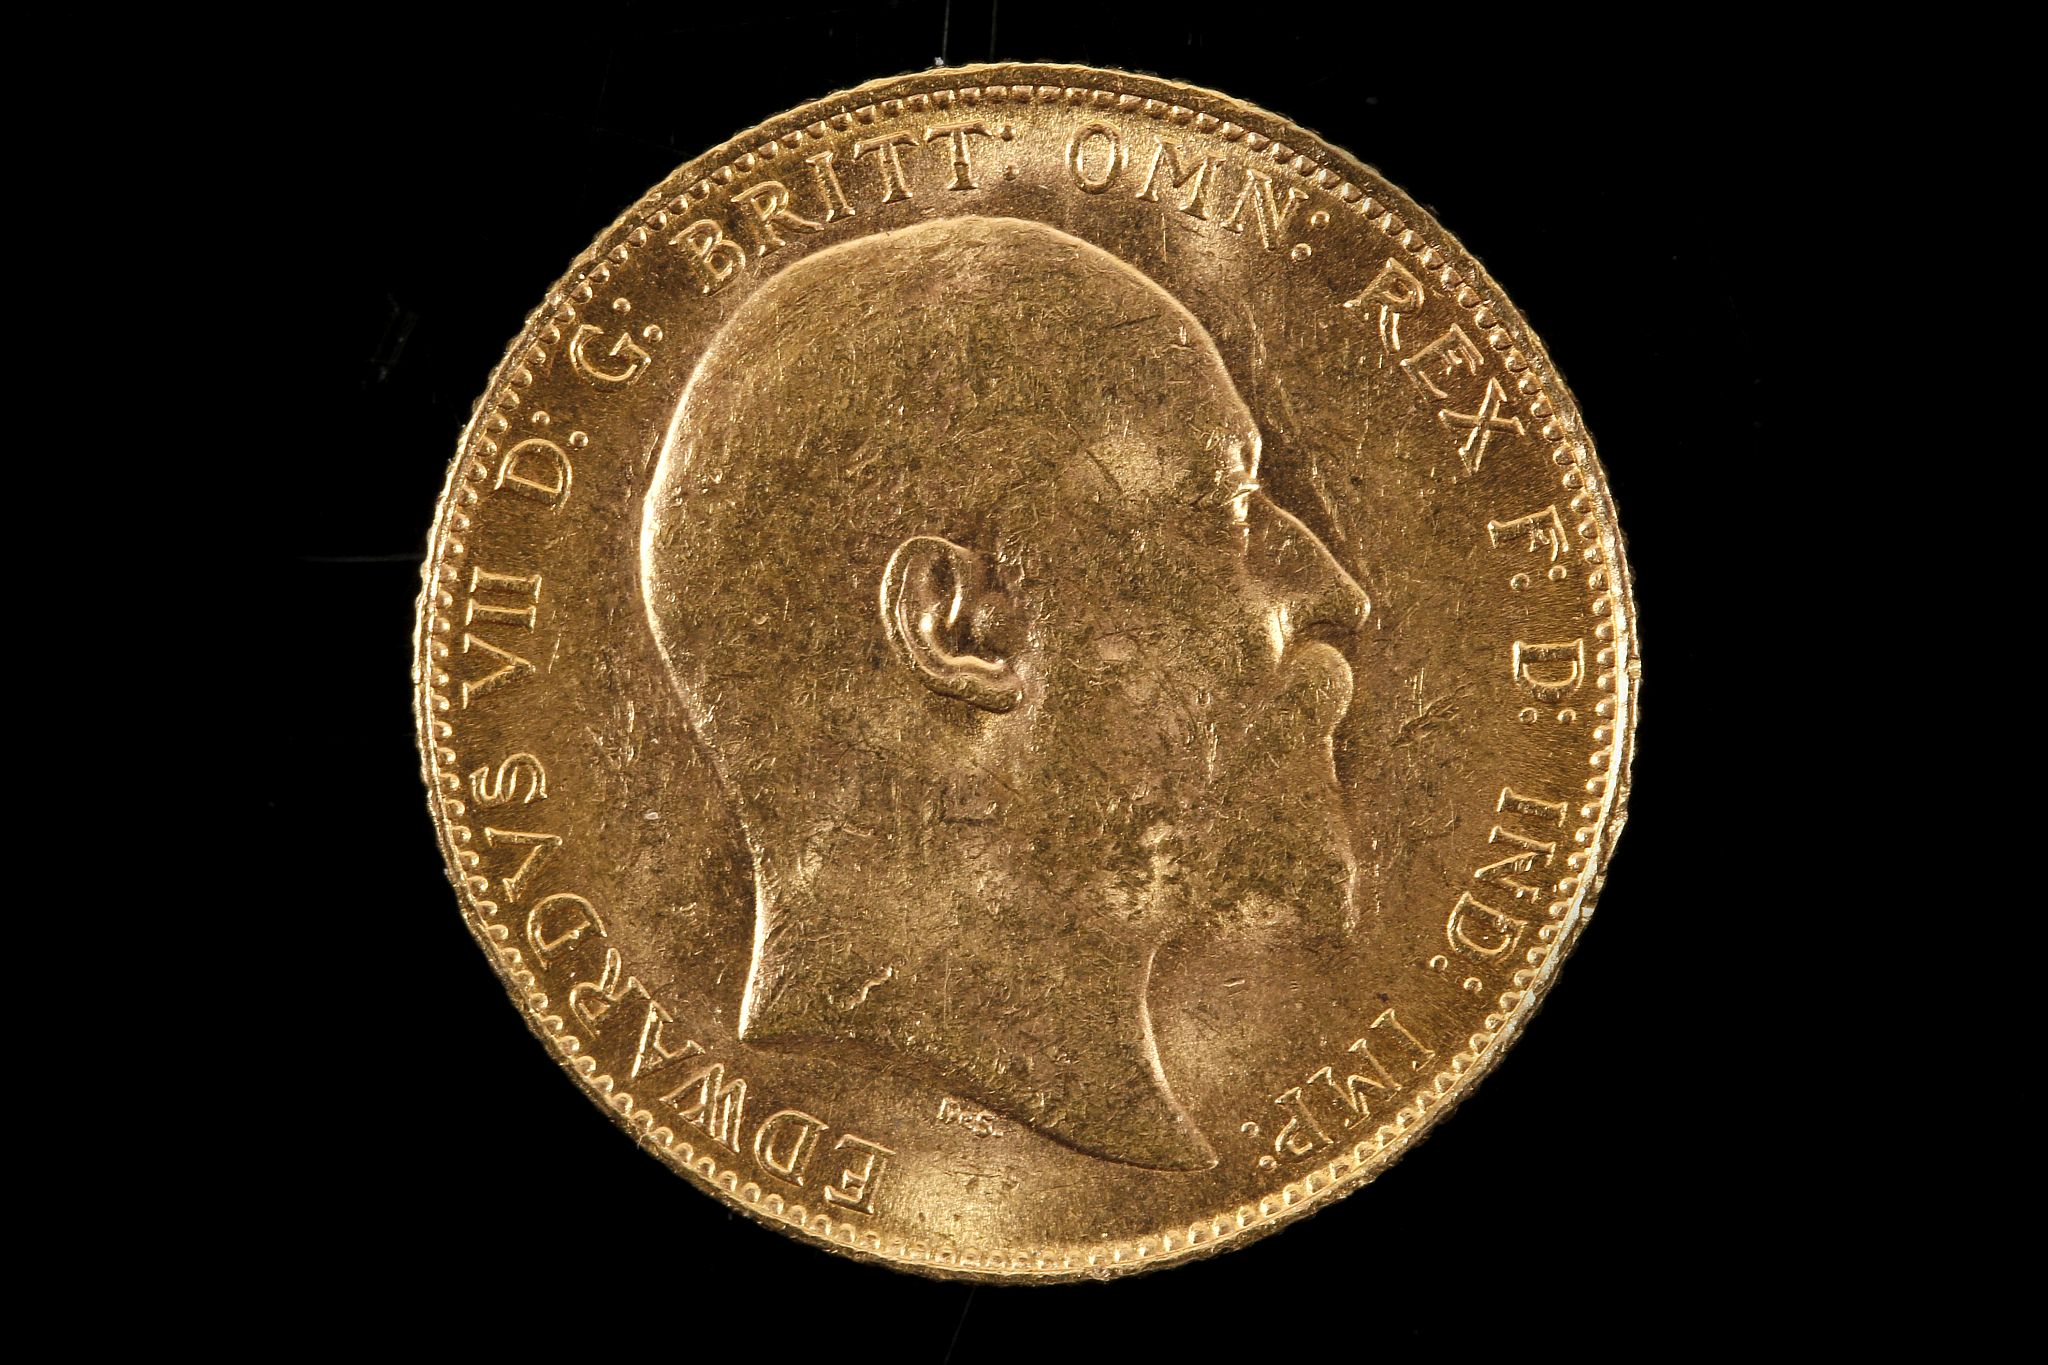 Edward 1910 sovereign, EF. - Image 2 of 2